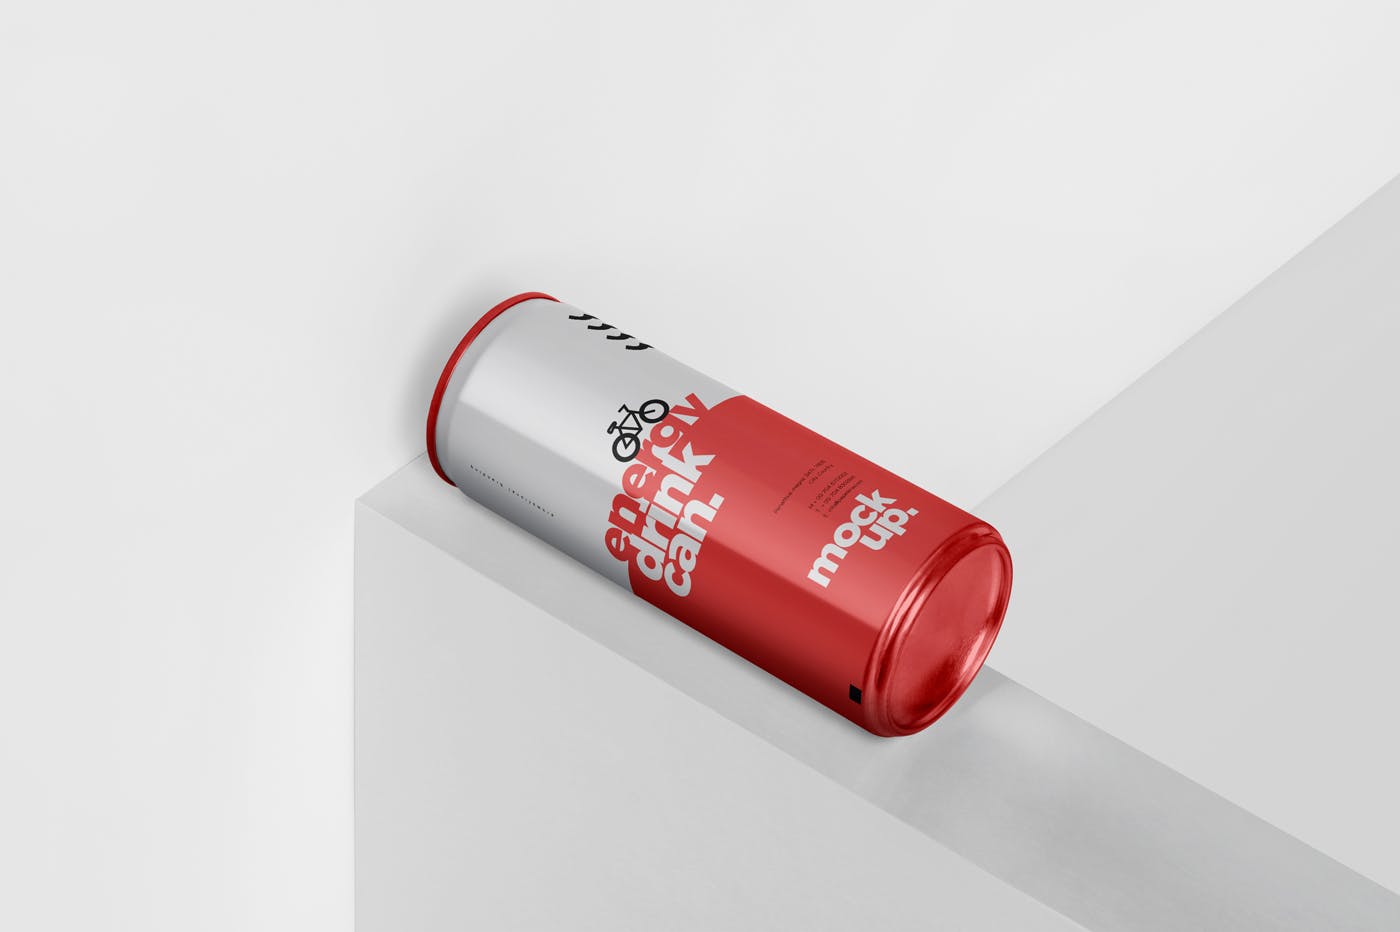 能量饮料易拉罐罐头外观设计16设计网精选模板 Energy Drink Can Mock-Up – 250 ml插图(4)